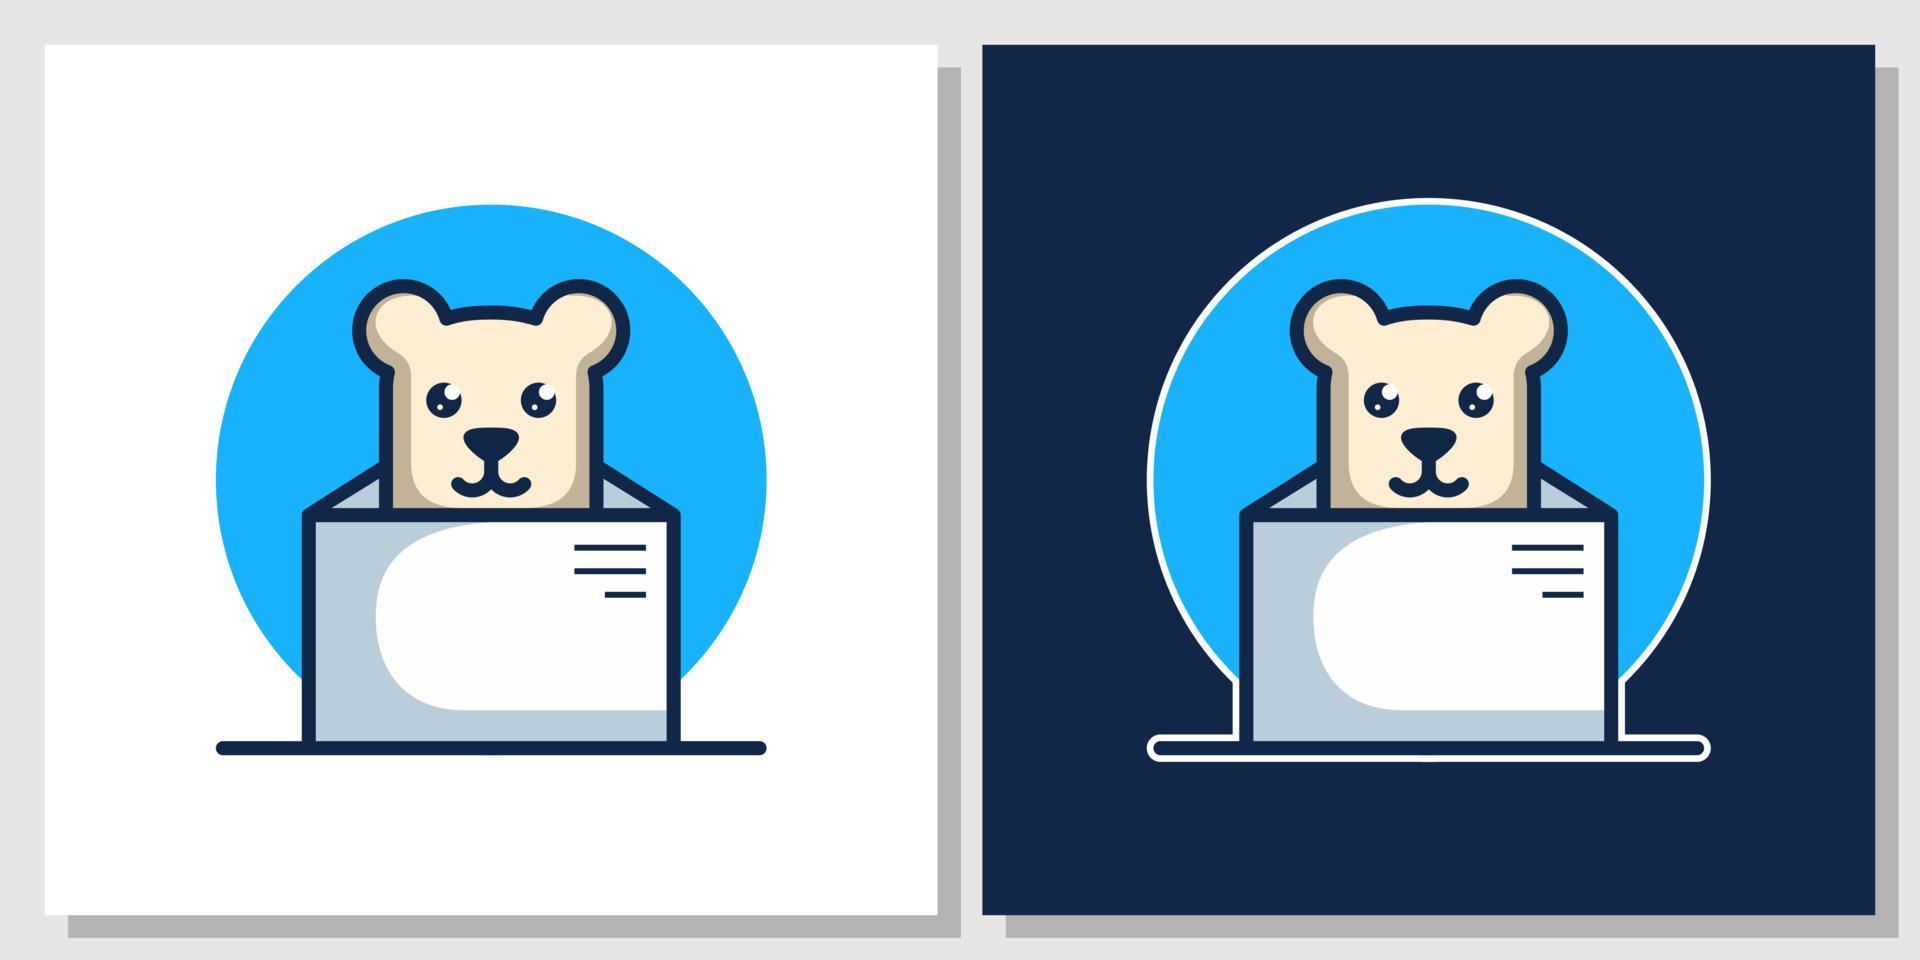 schattige beer doos cartoon dier mascotte cadeau leuk teddy verjaardag logo ontwerp met sjabloon voor visitekaartjes vector